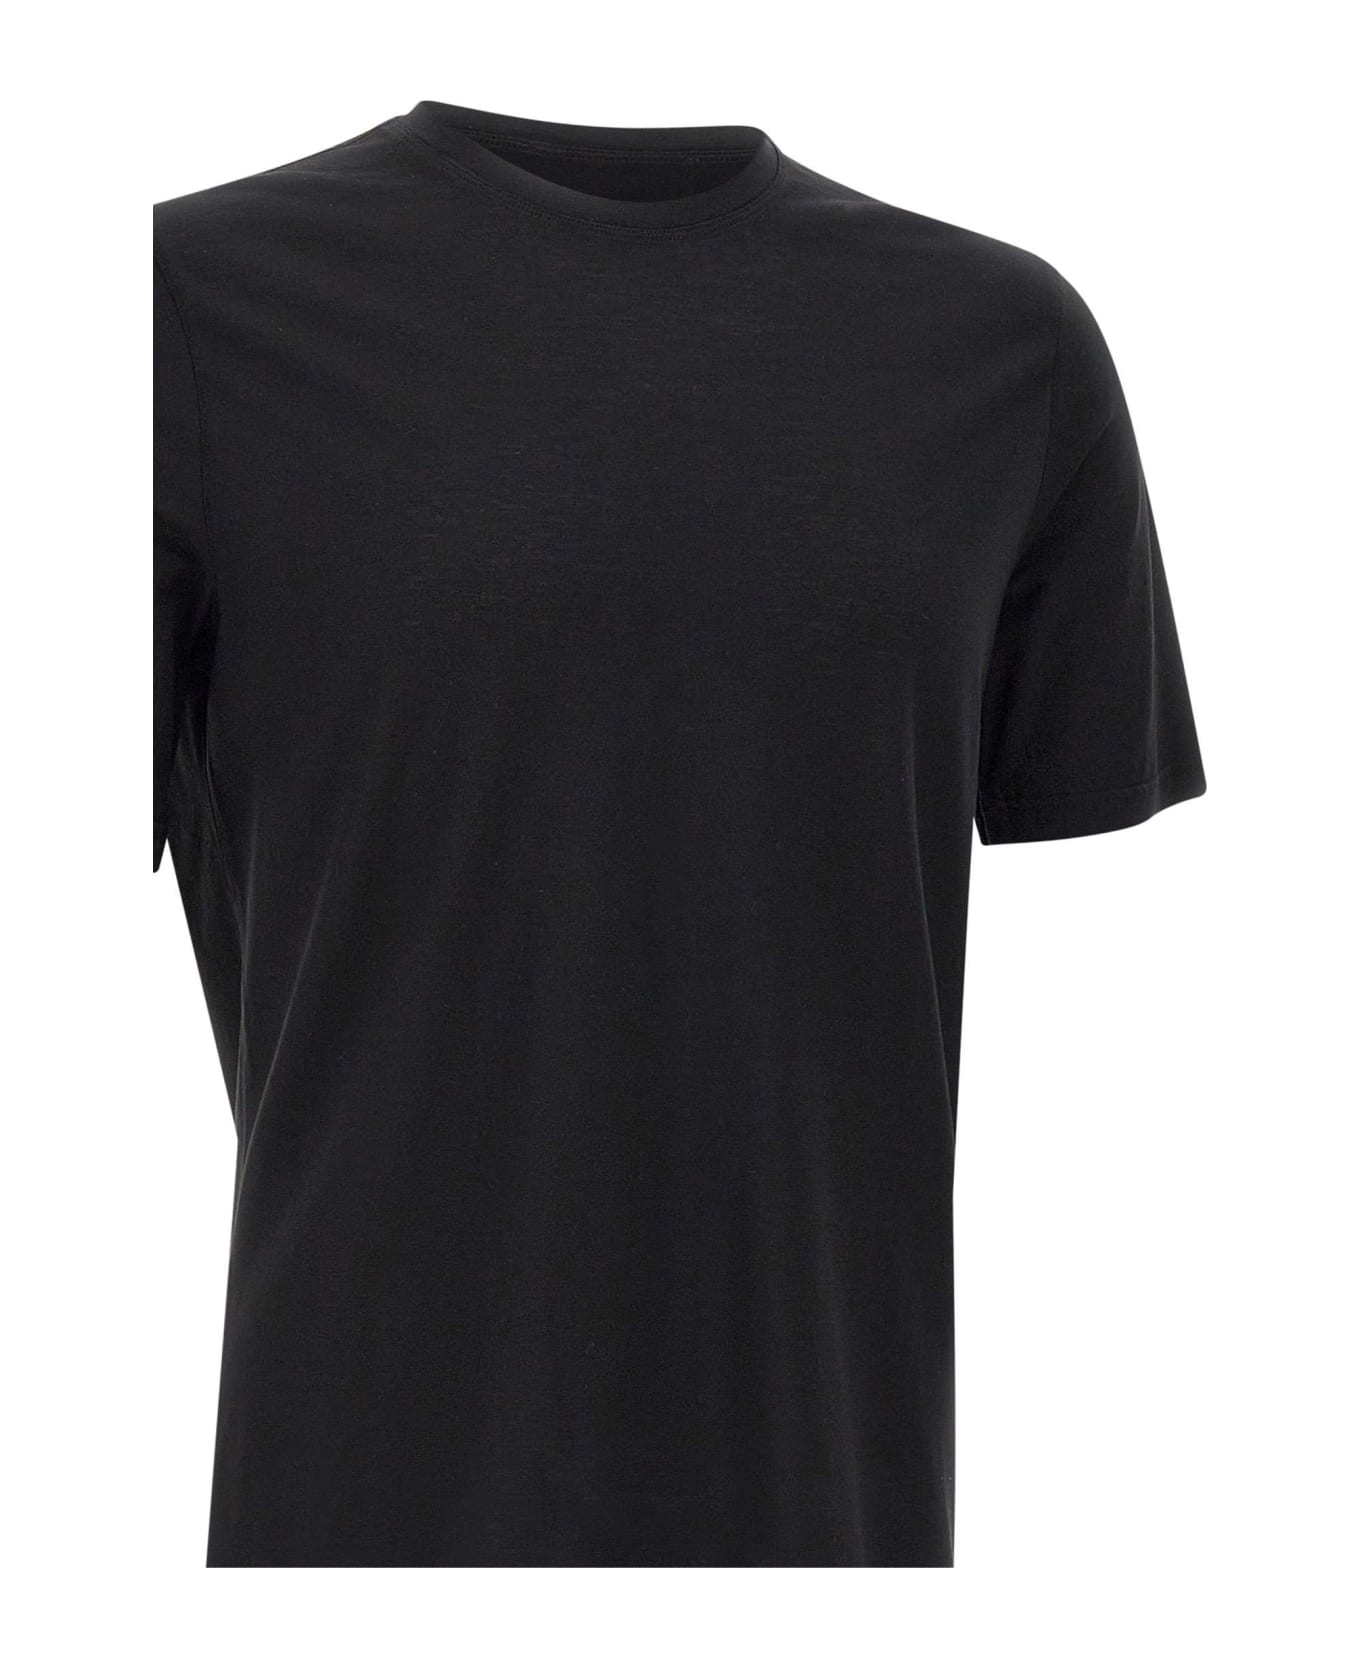 Filippo De Laurentiis Crêpe Cotton T-shirt - Black